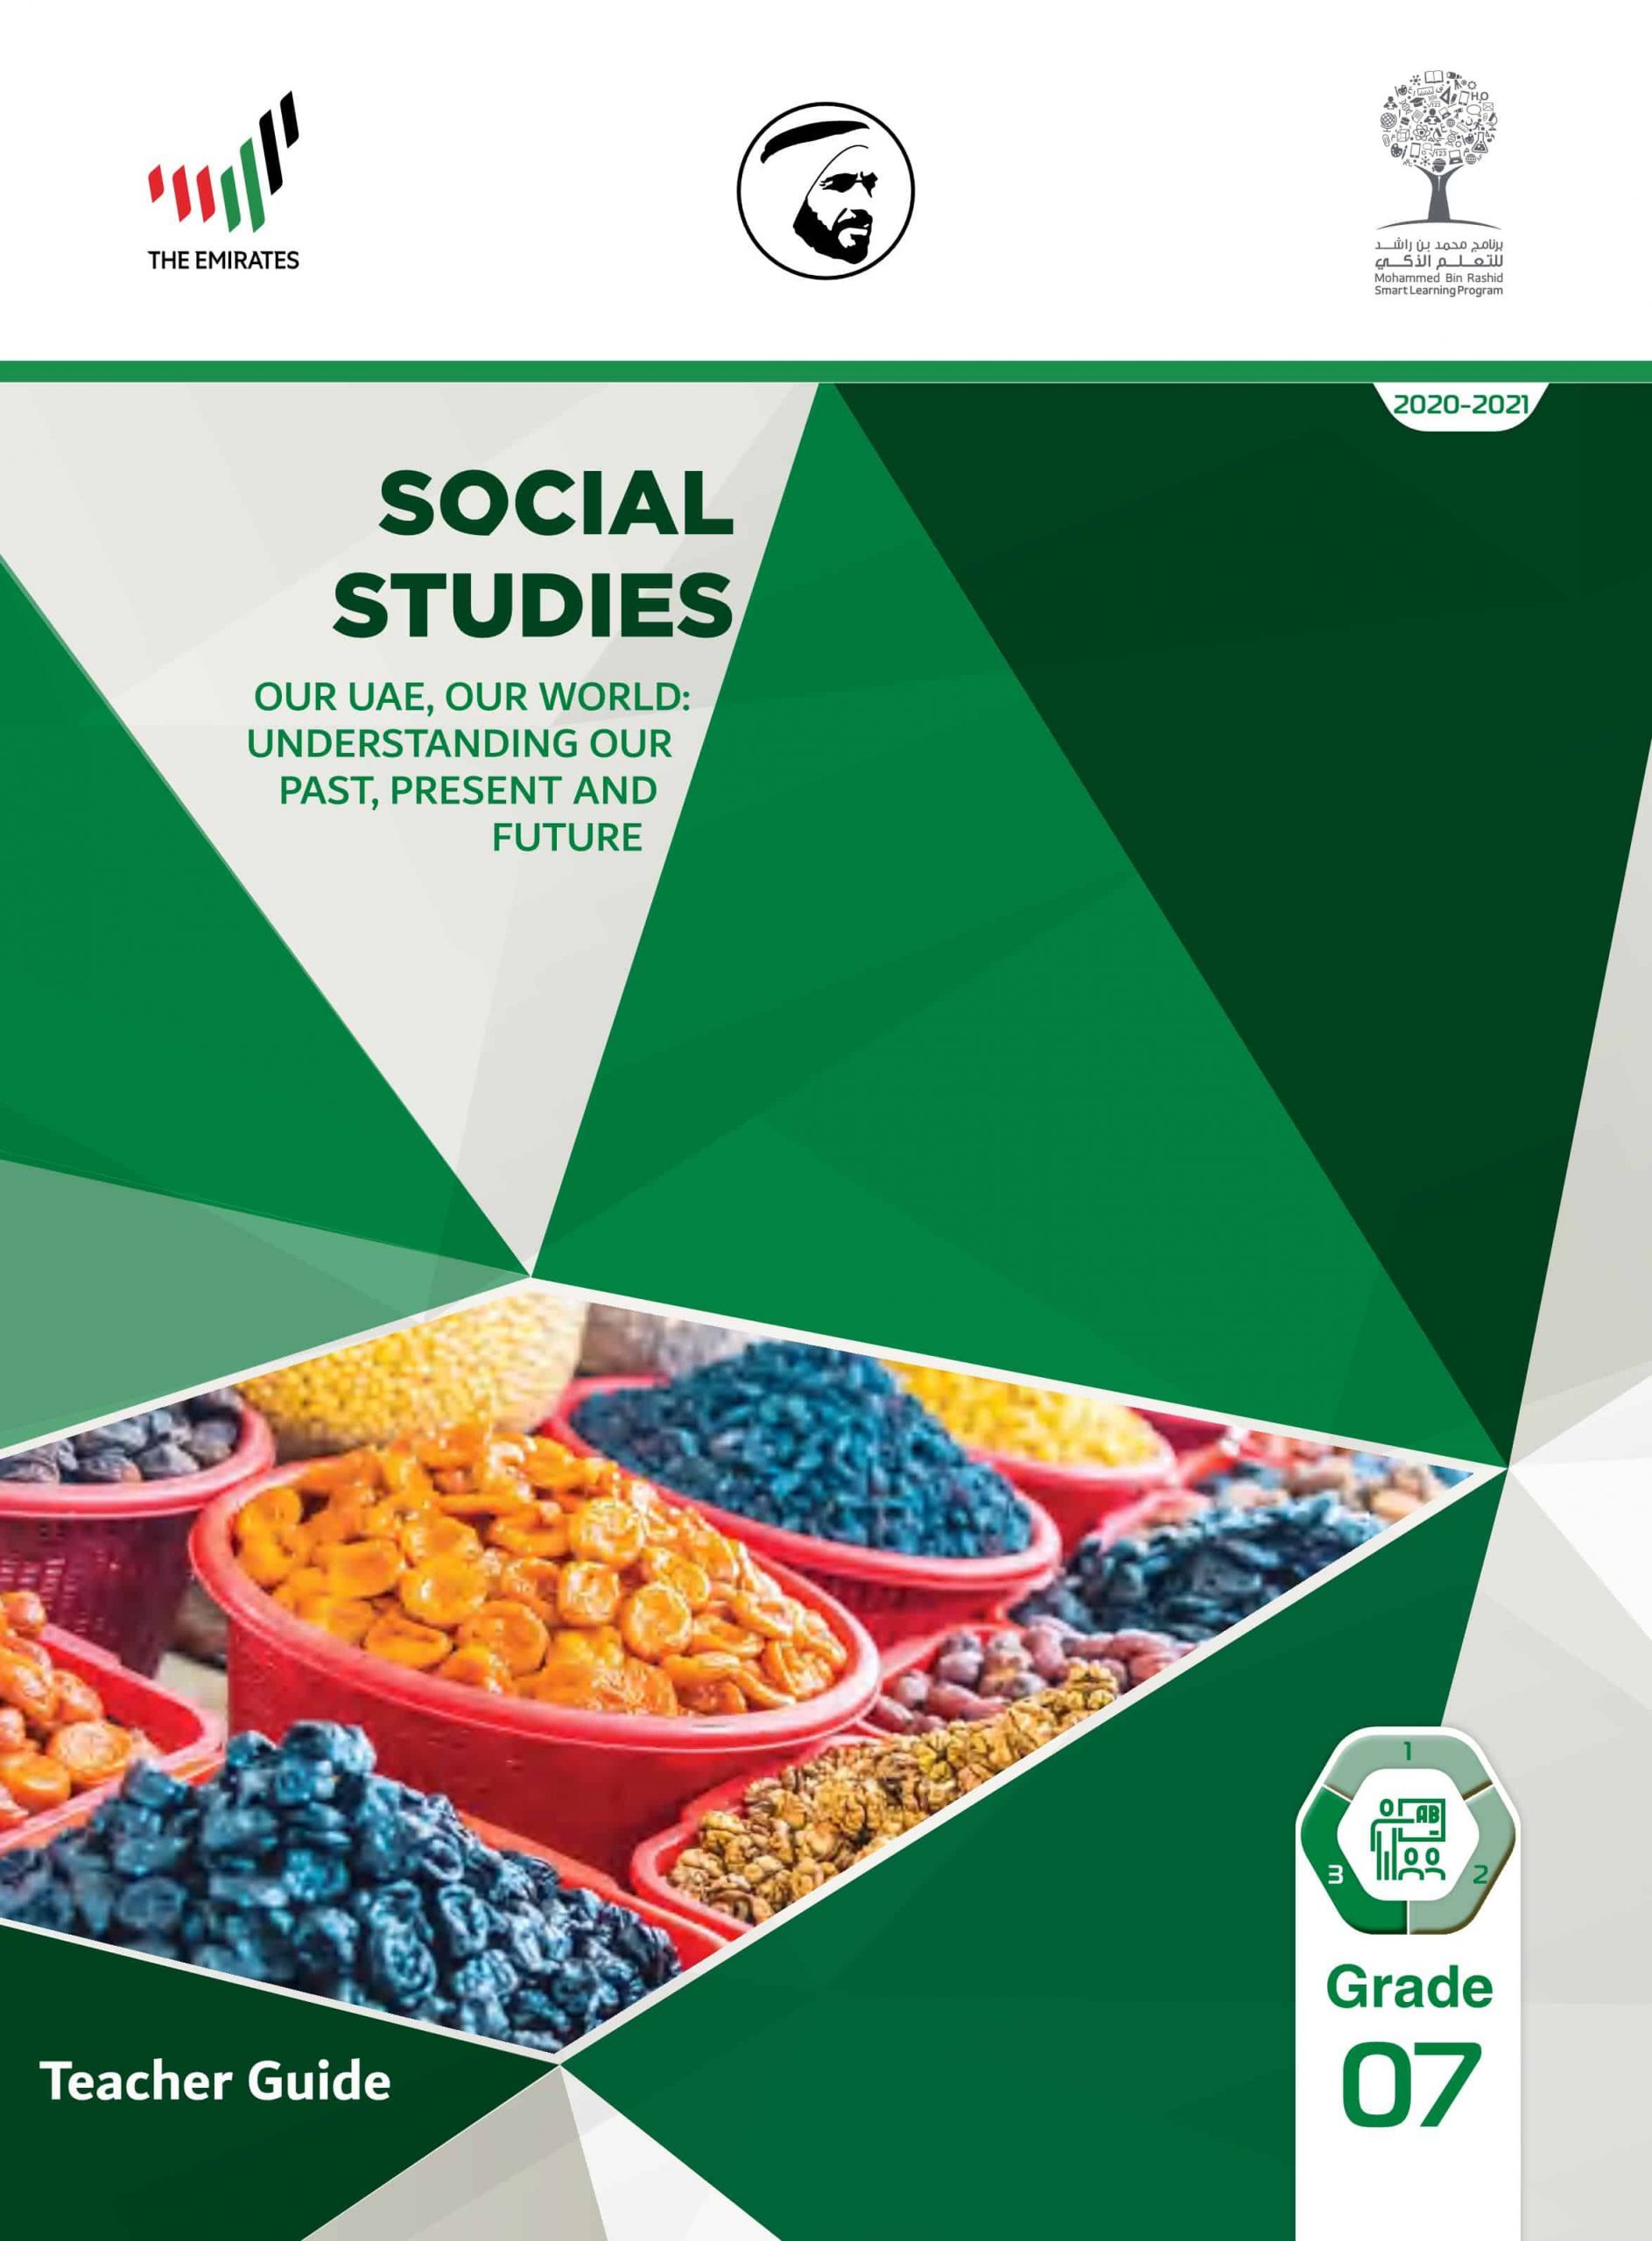 دليل المعلم بالإنجليزي الفصل الدراسي الثالث 2020-2021 الصف السابع مادة الدراسات الإجتماعية والتربية الوطنية